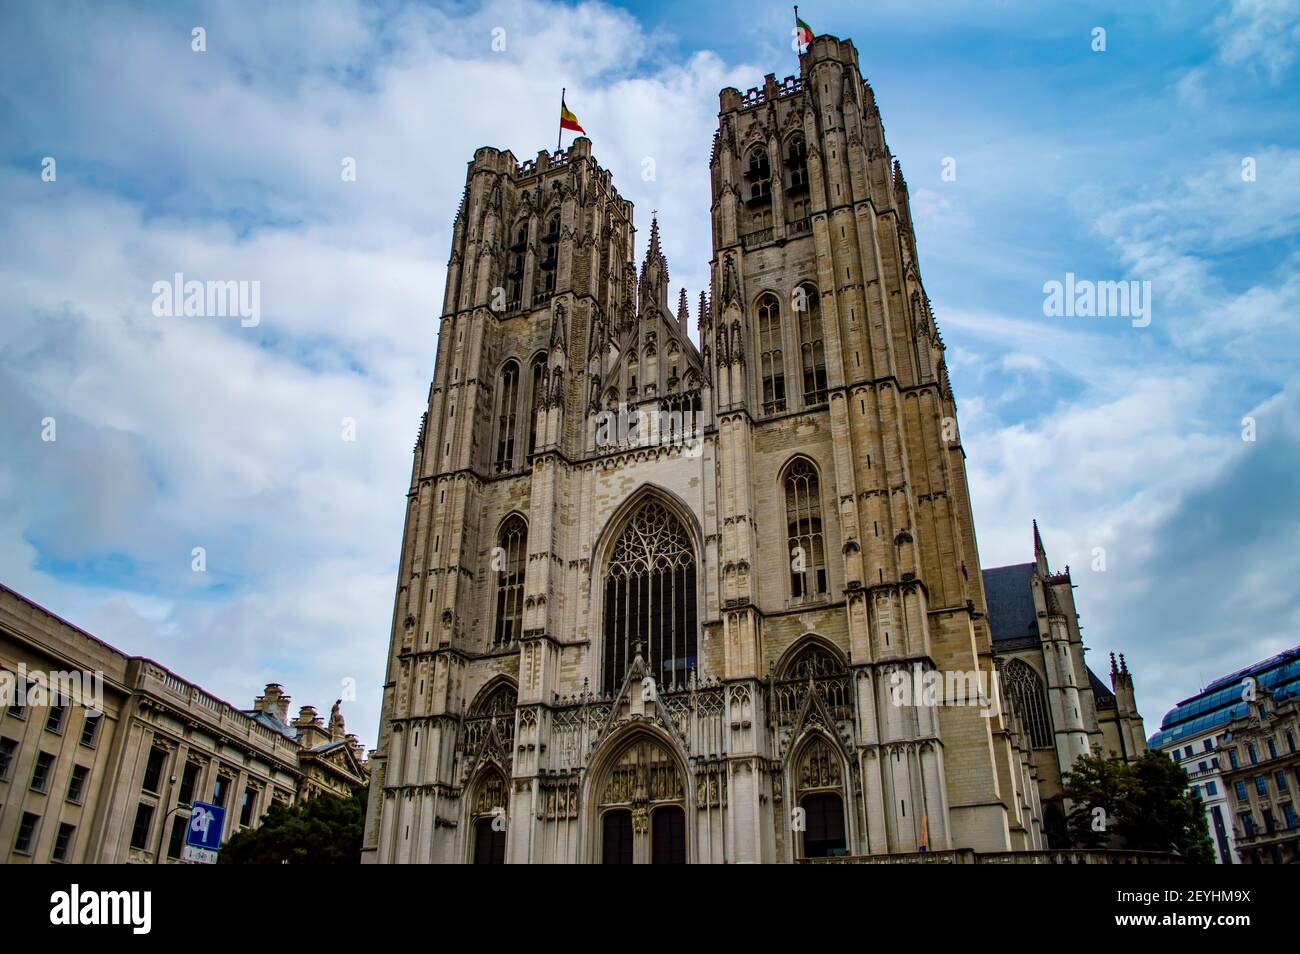 Bruxelles, Belgio - 13 luglio 2019: Facciata della Cattedrale di San Michele e San Gudula a Bruxelles, Belgio Foto Stock